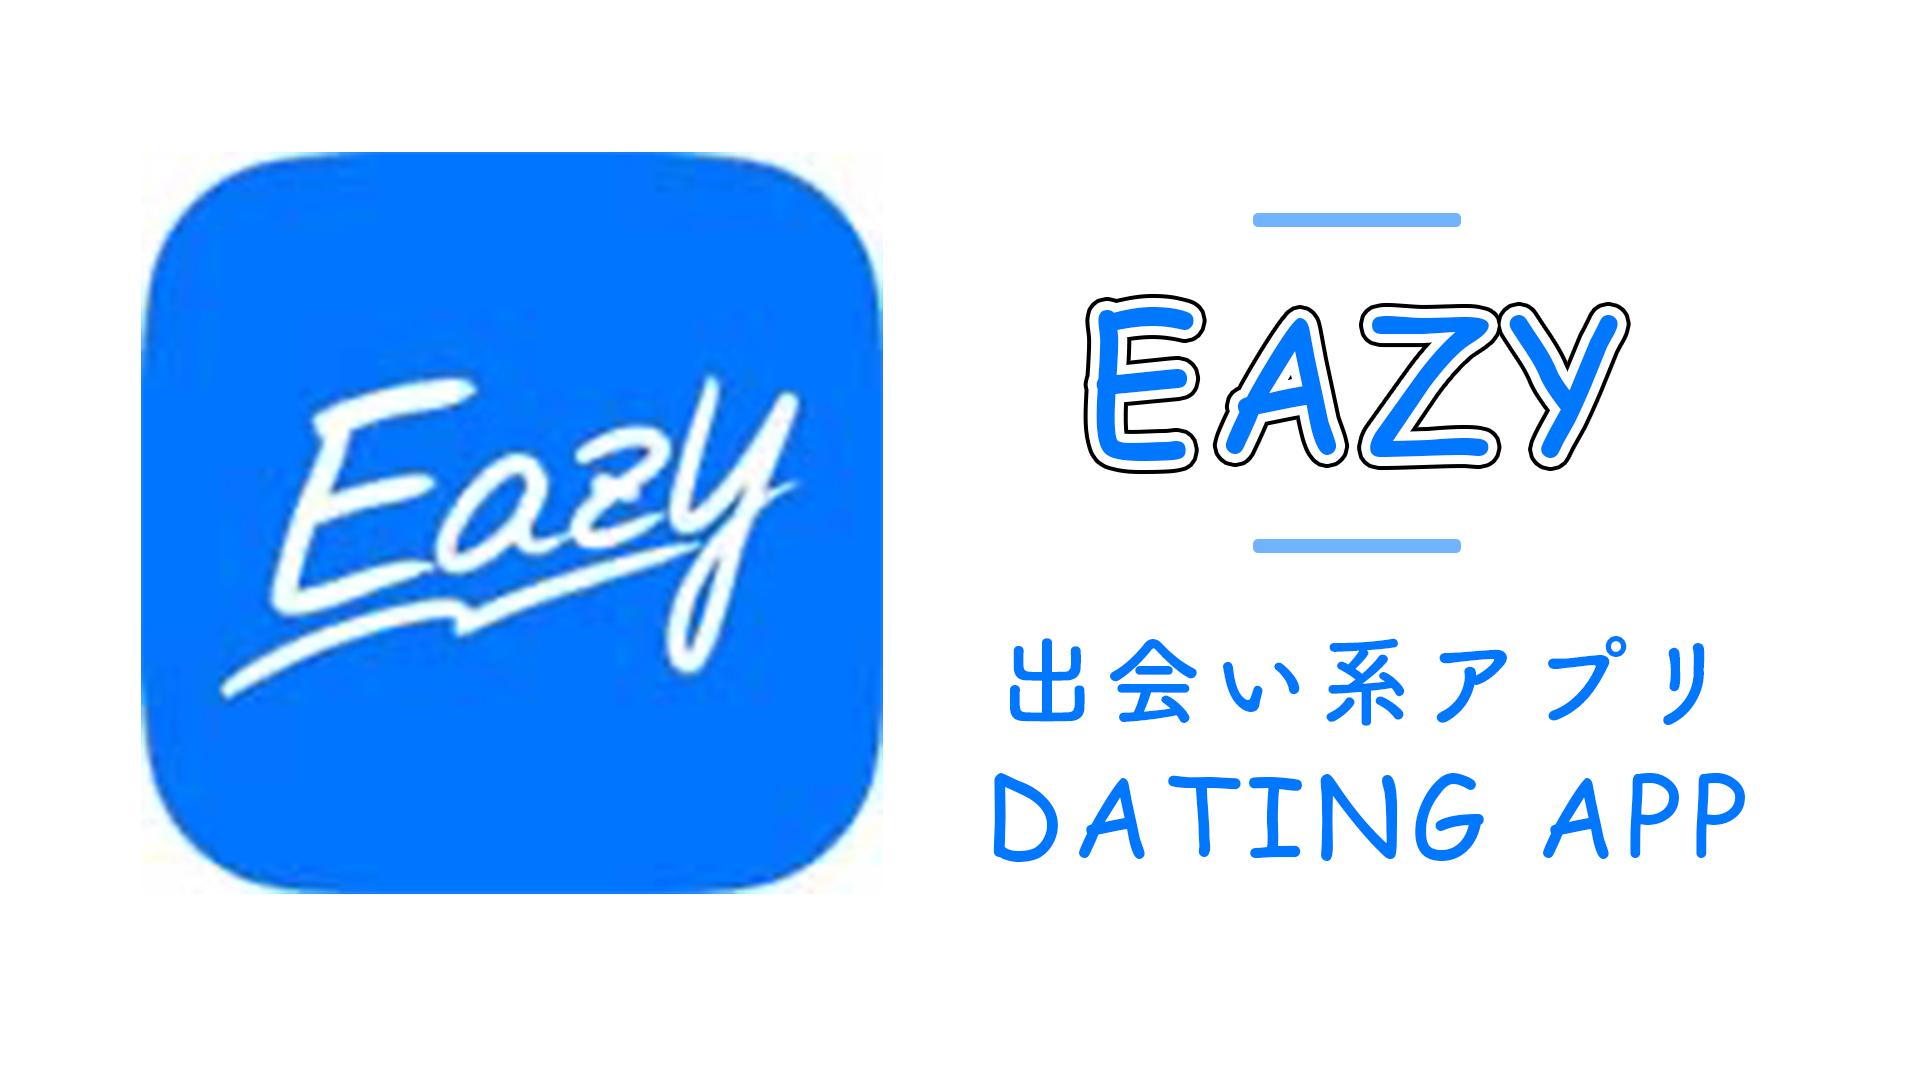 Eazyはビデオ通話のできるアプリ。出会いはないけどエッチな話は出来る